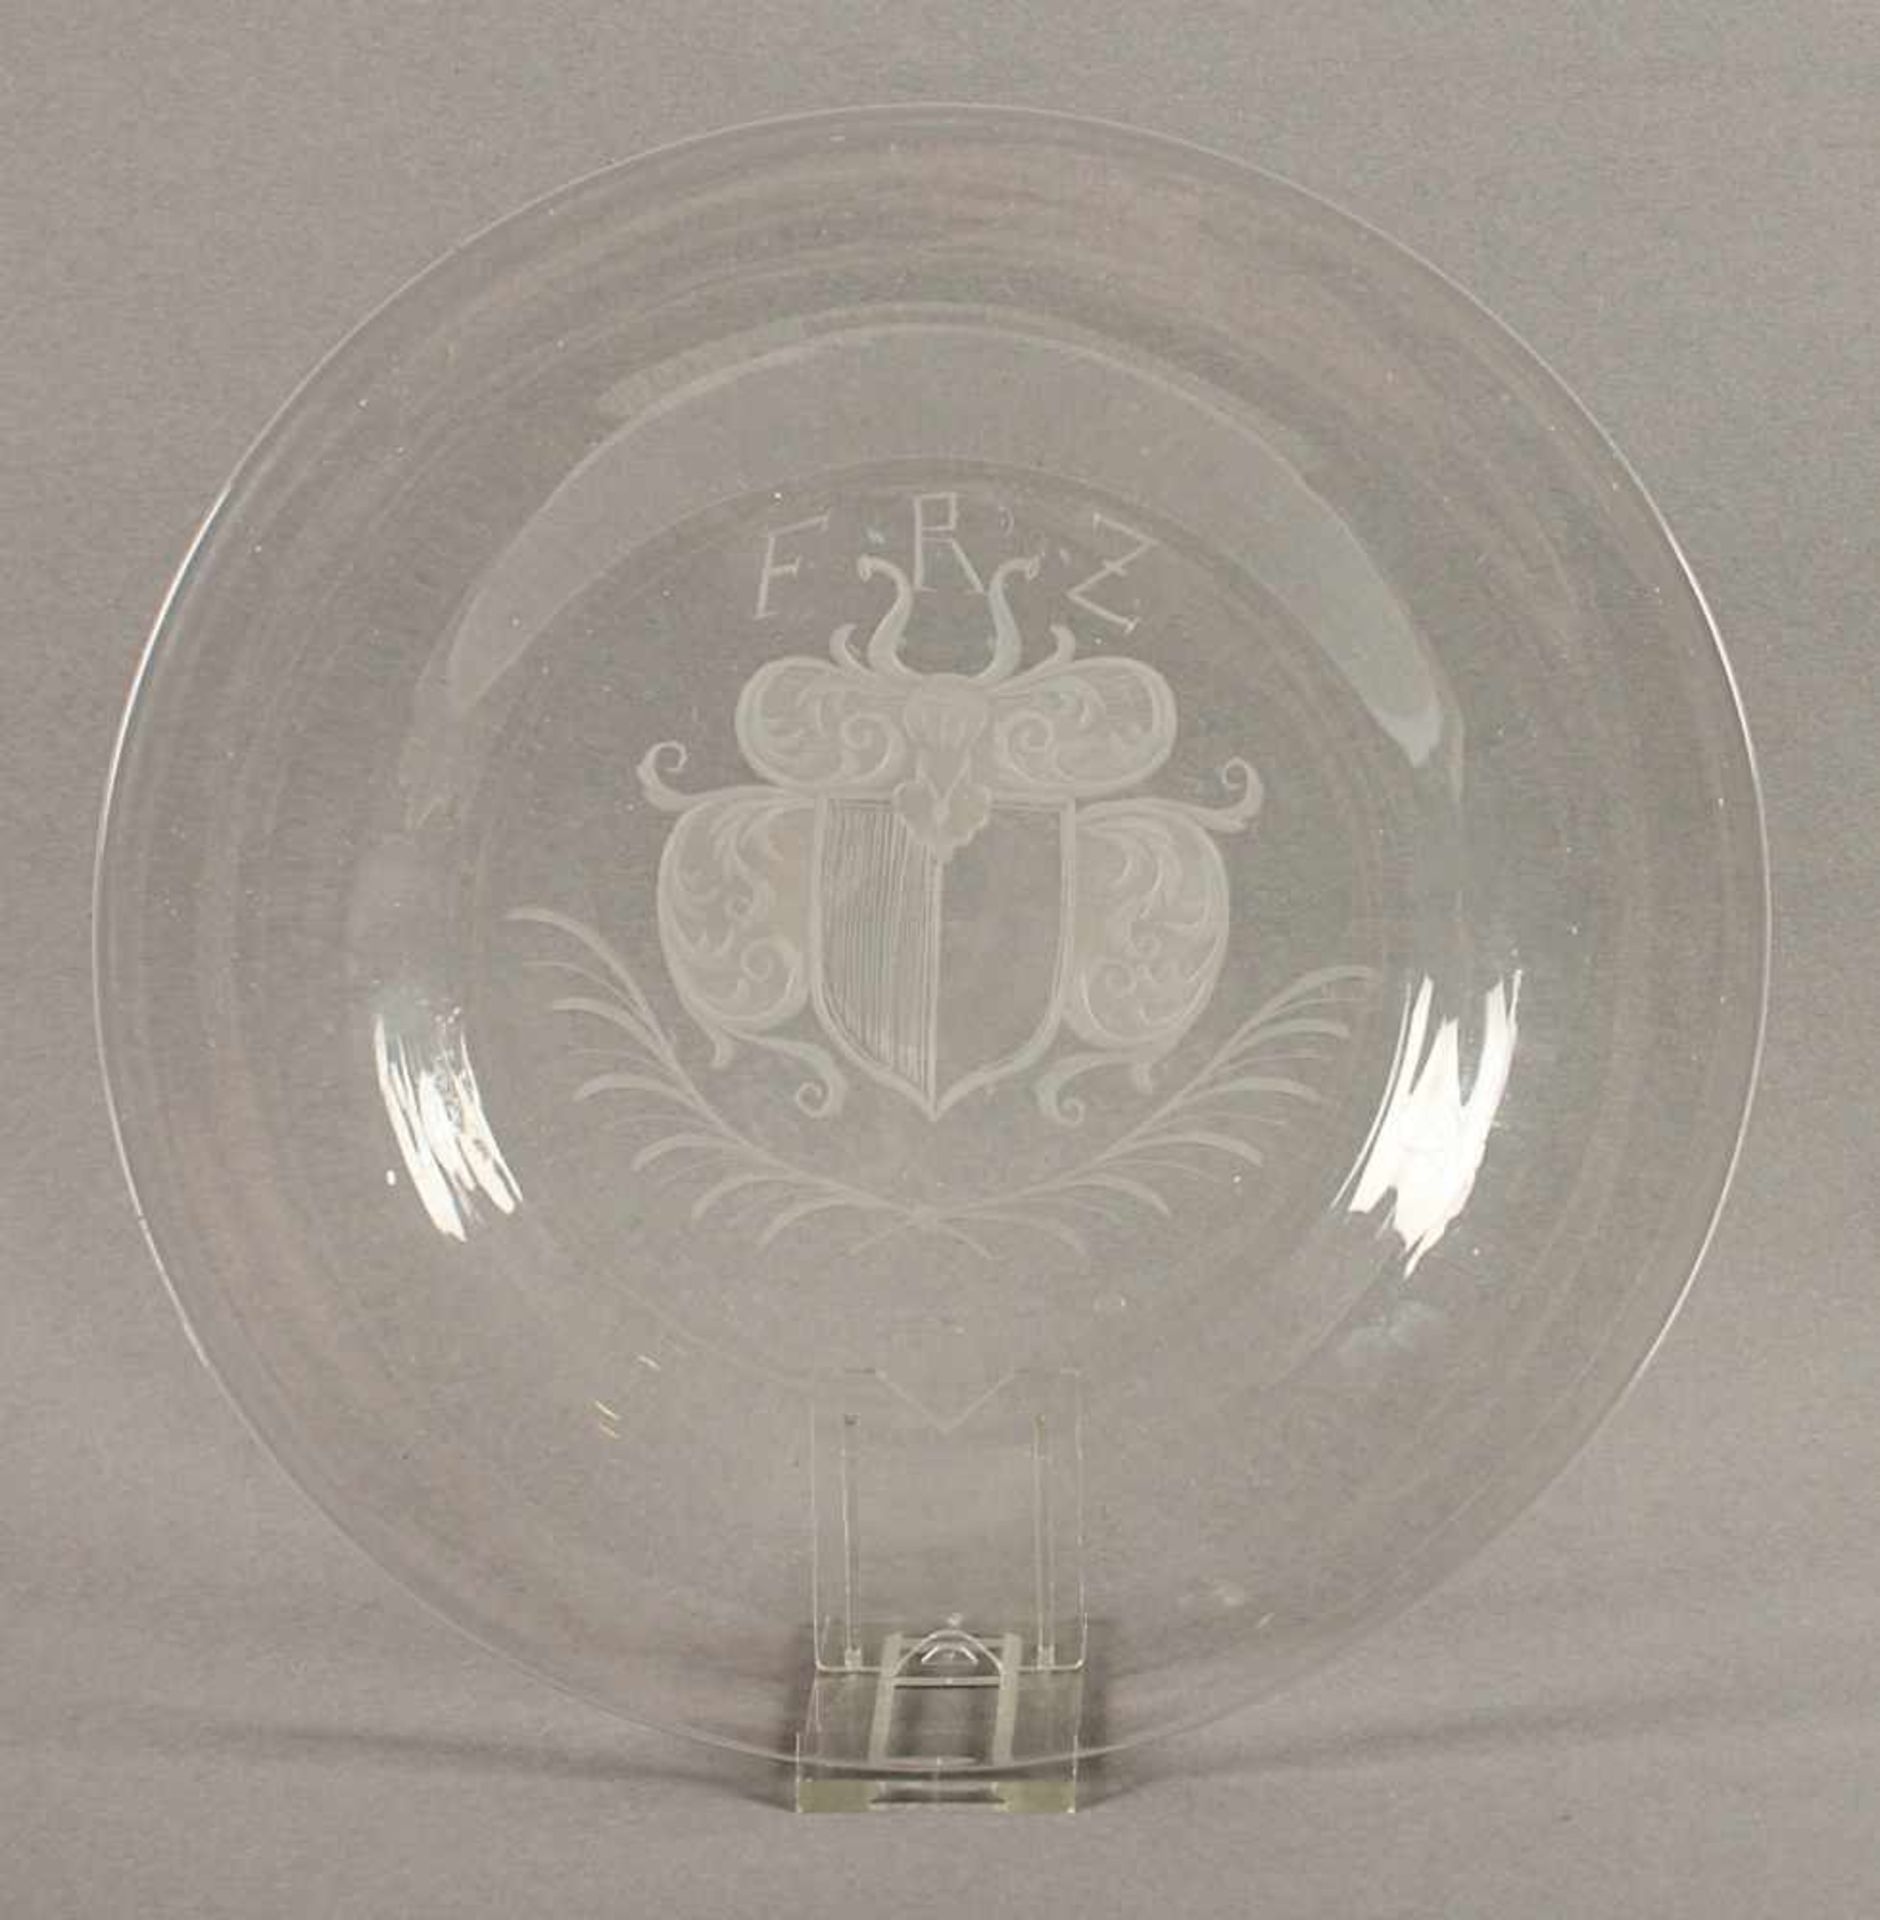 WAPPENTELLER, farbloses Glas, zentrales, matt geschnittenes Wappen mit Helmzier und Monogramm F.R.